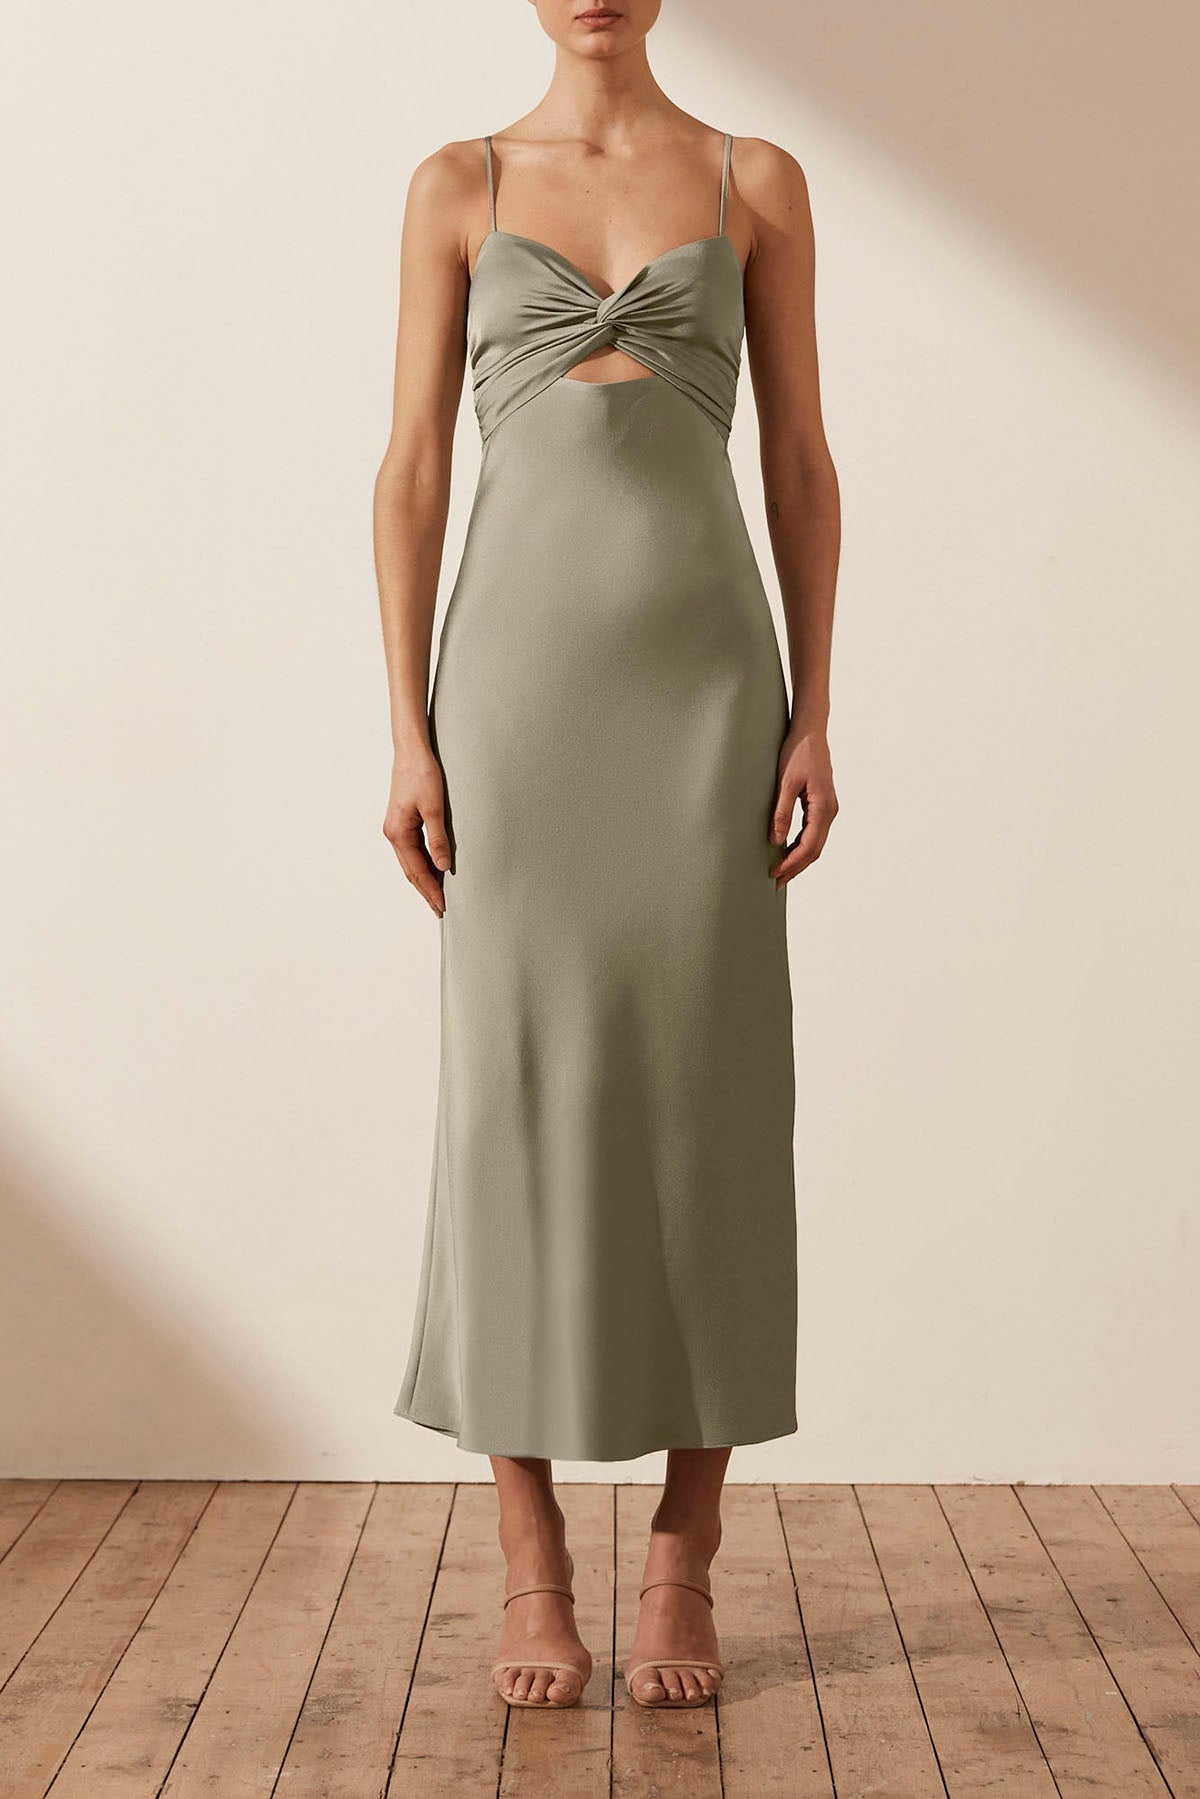 Green Satin Midi Dress - Twist-Front Dress - Strapless Slip Dress